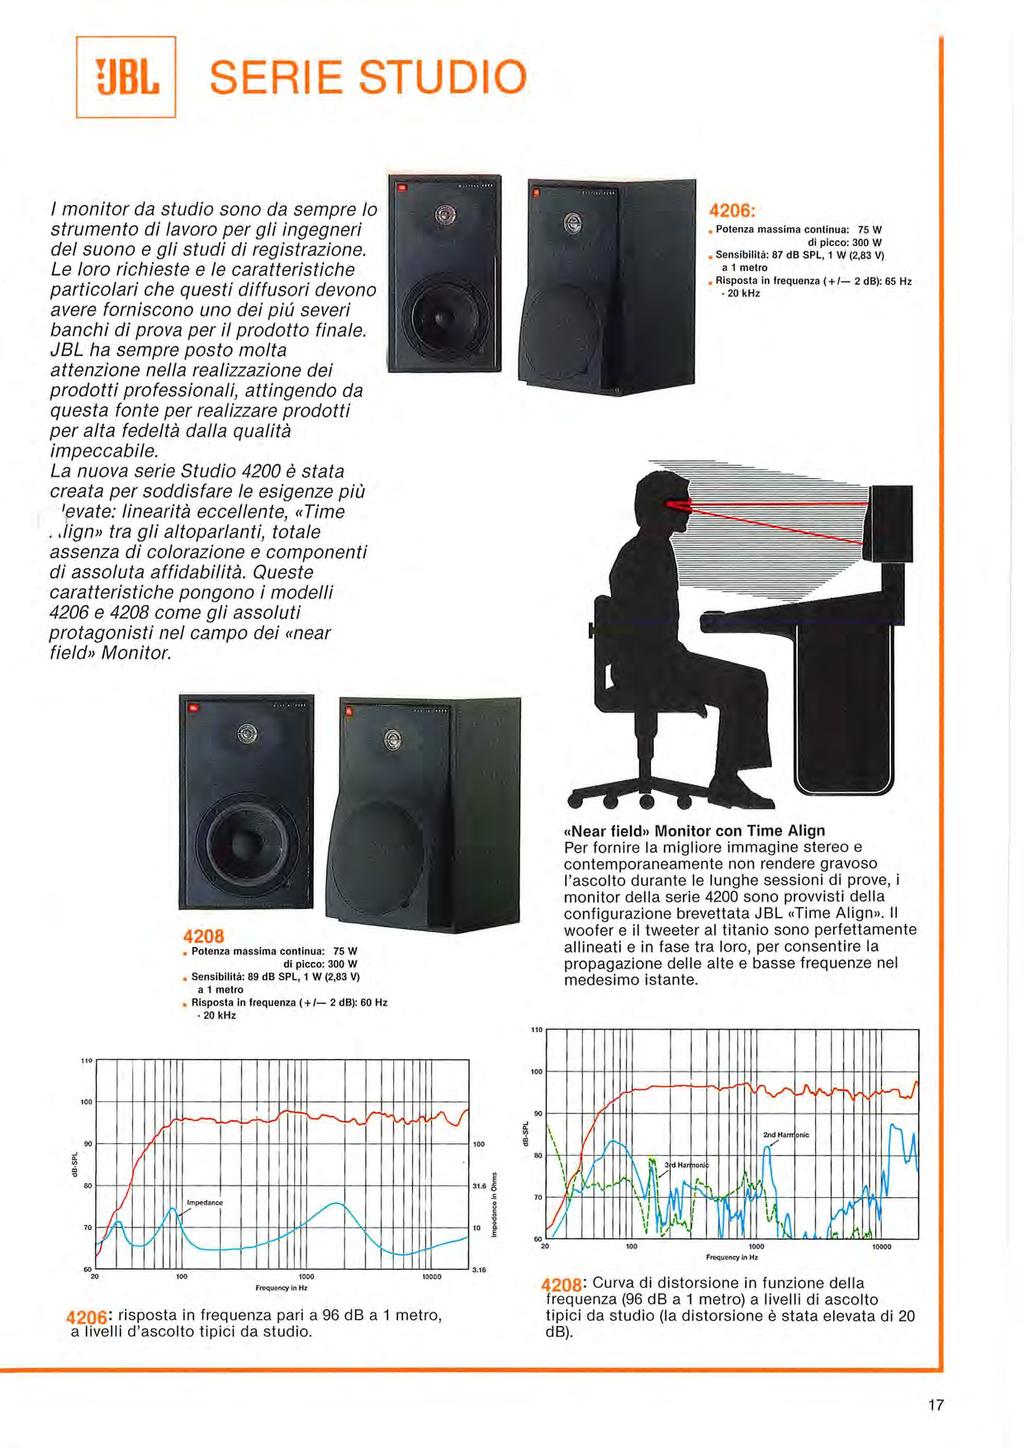 SERIE STUDIO / monitor da studio sono da sempre lo strumento di lavoro per gli ingegneri del suono e gli studi di registrazione.